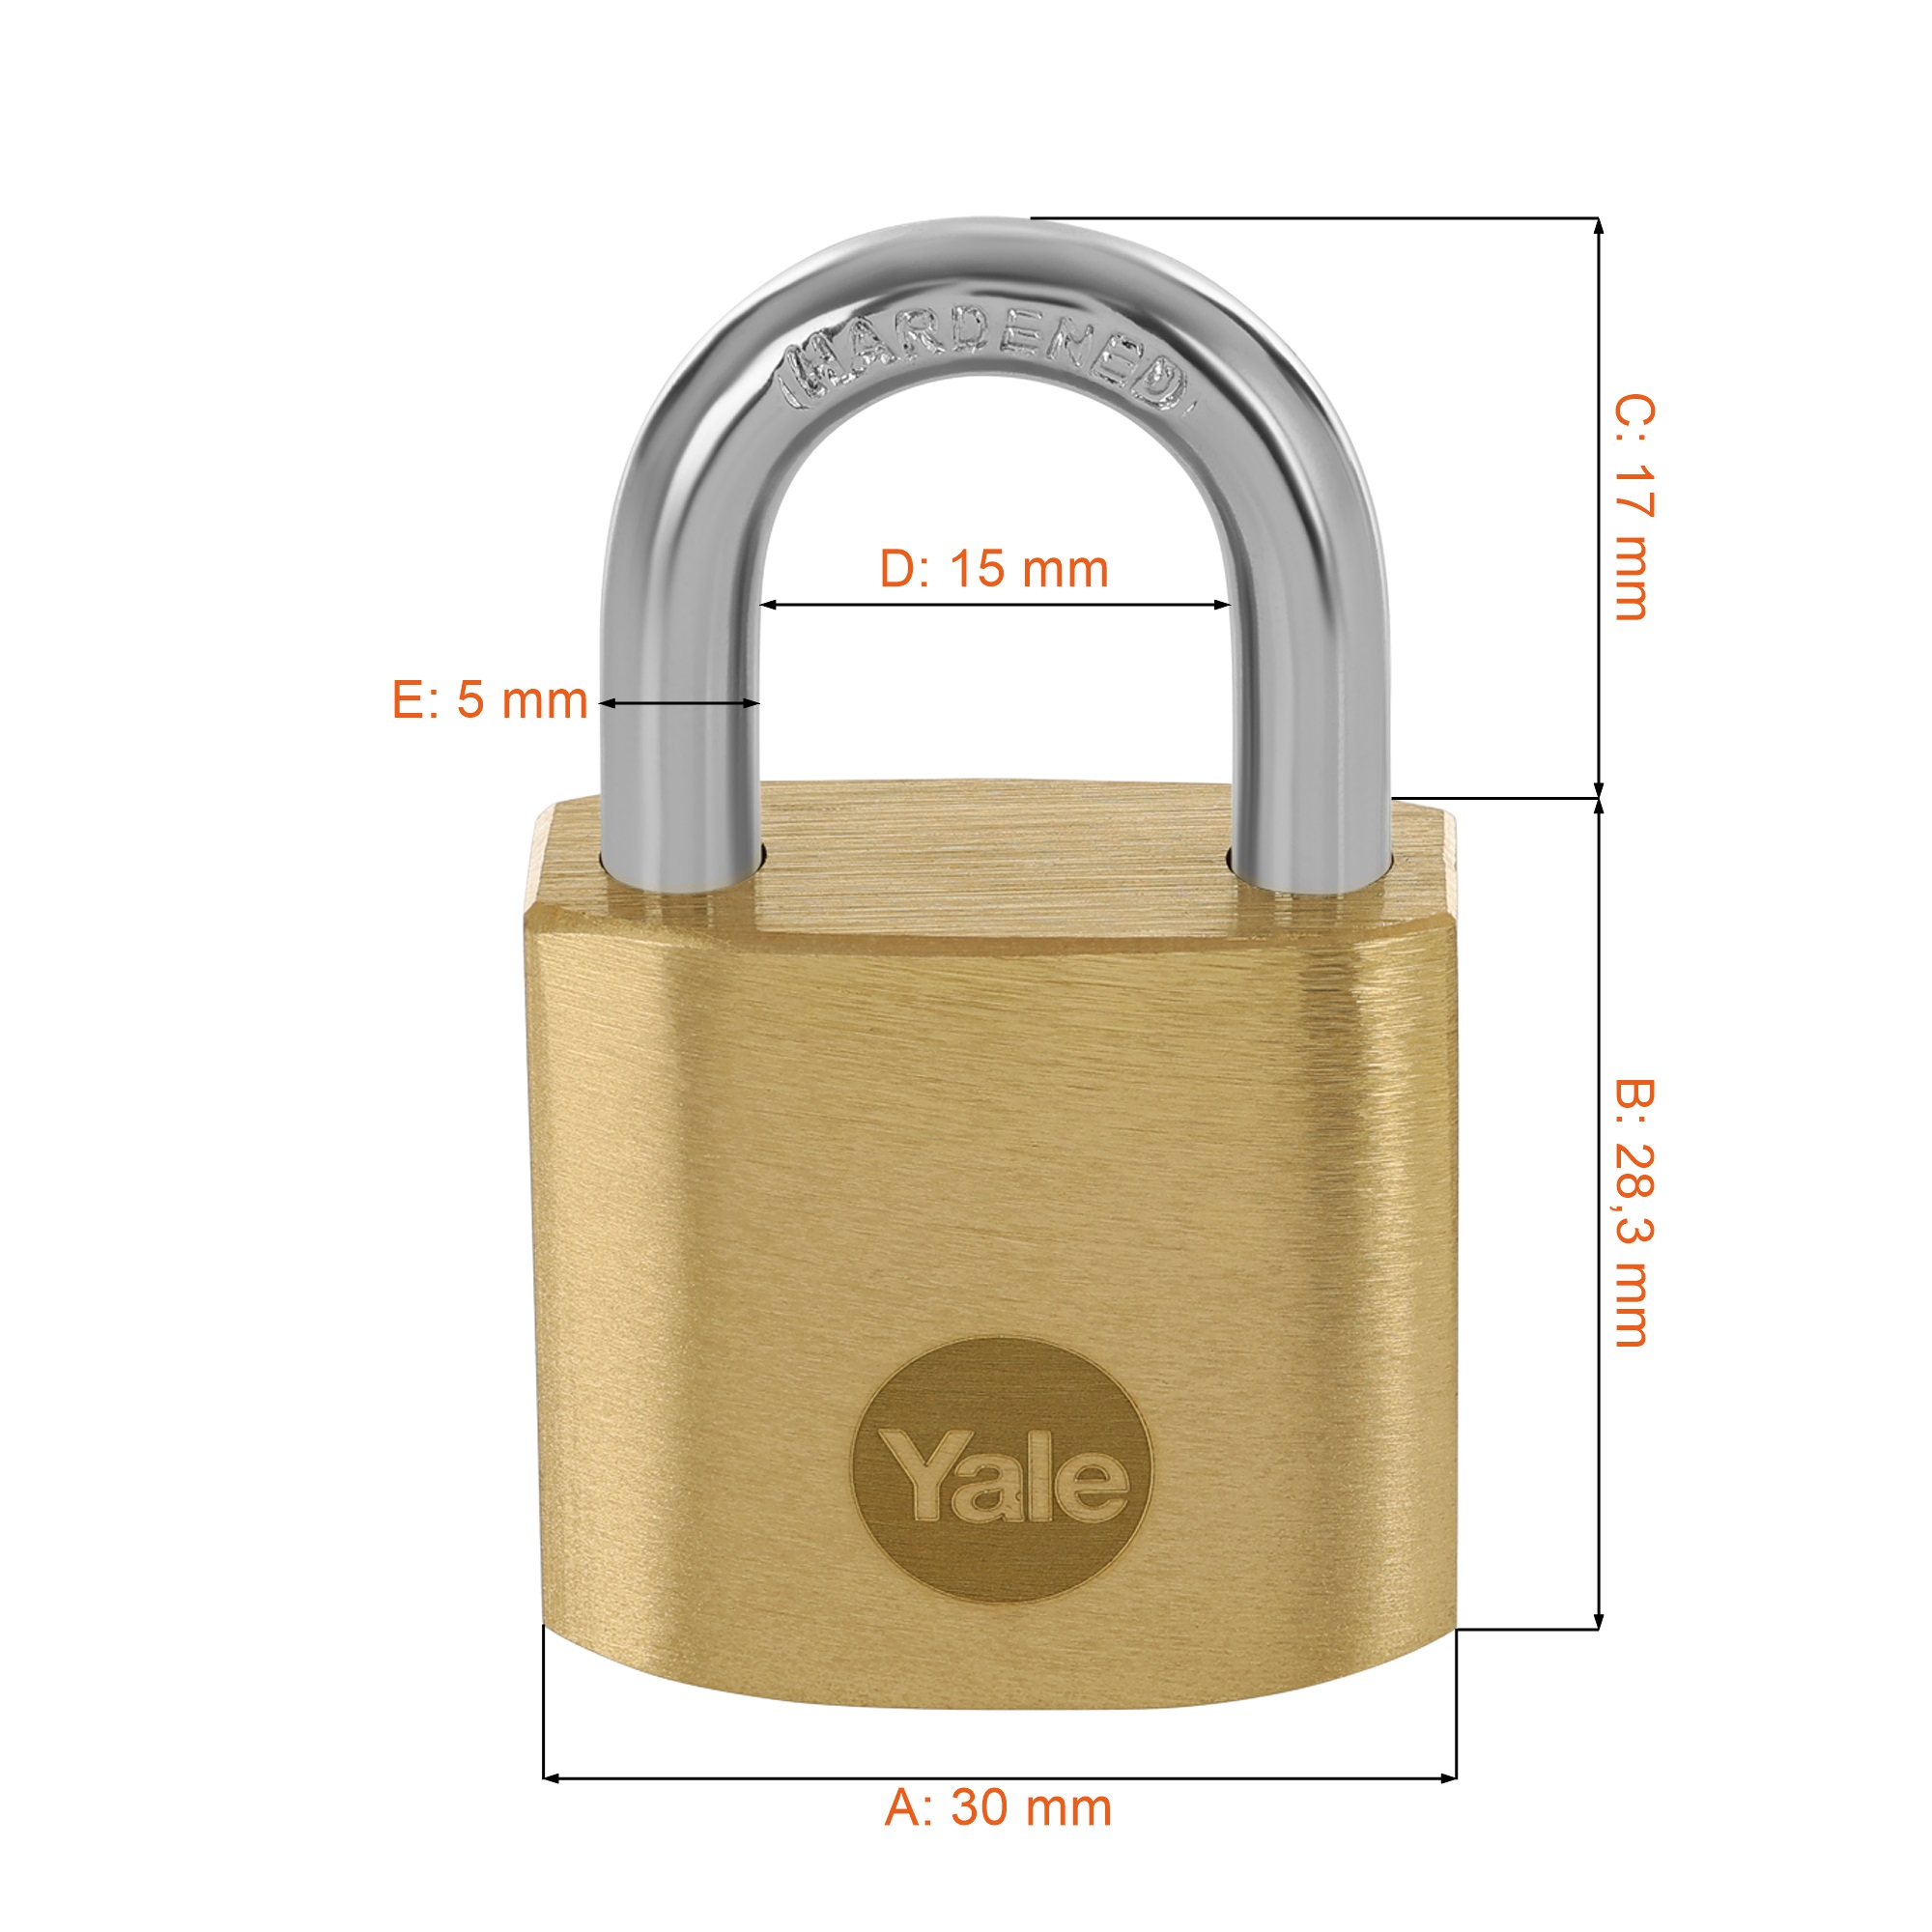 Kłódka na kluczyk Yale Y110B/30/115/1 - wymiary